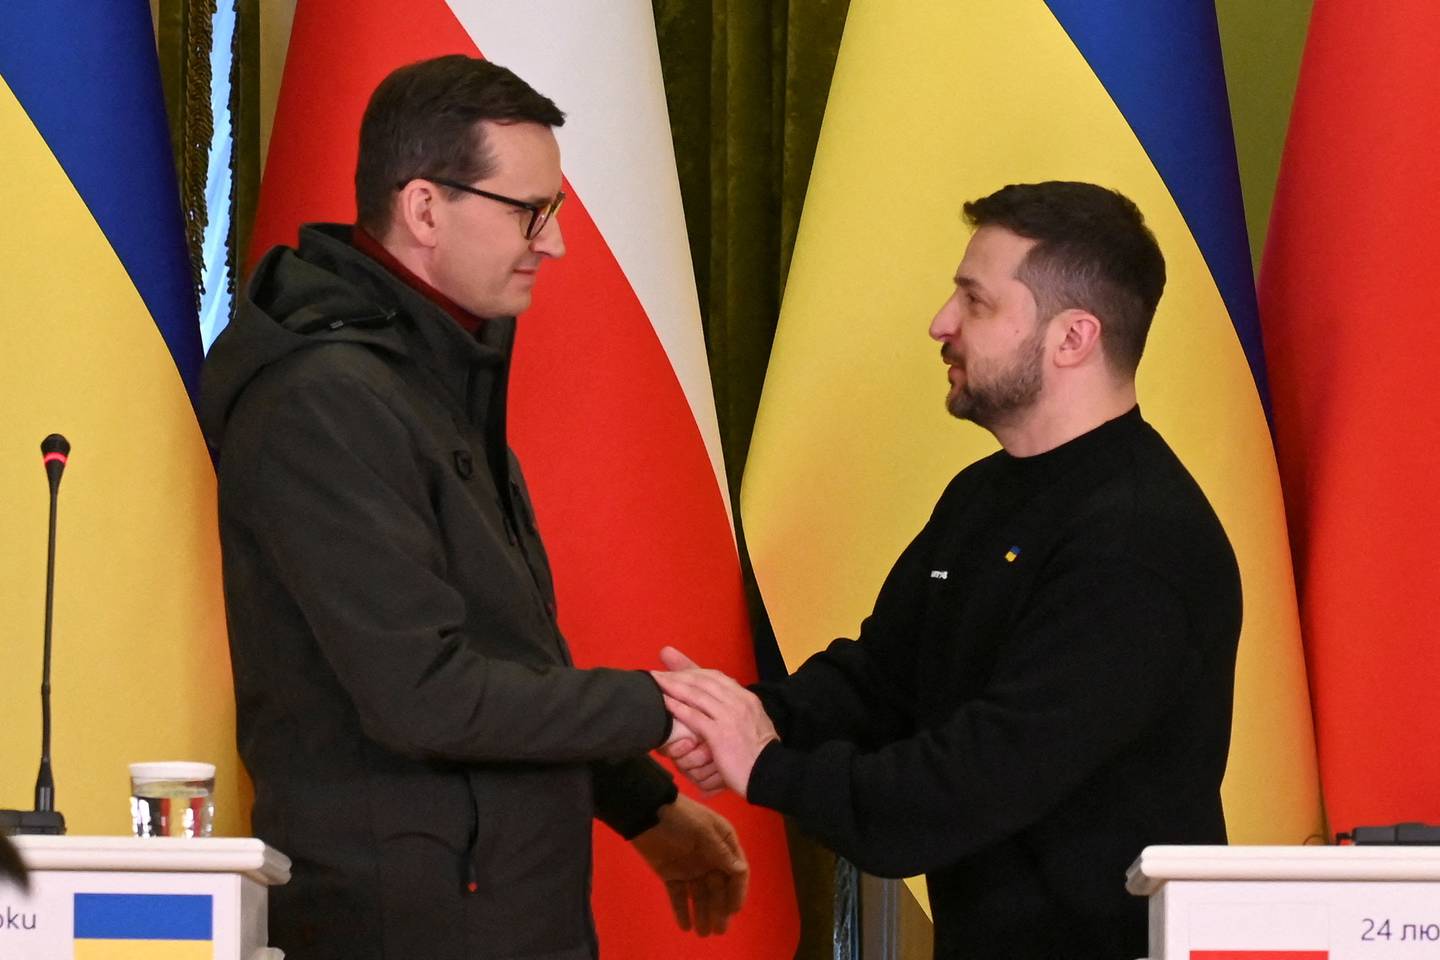 Polen har vært en av Ukrainas største støttespillere under krigen. Nå er forholdet mellom de to landene svært anspent.